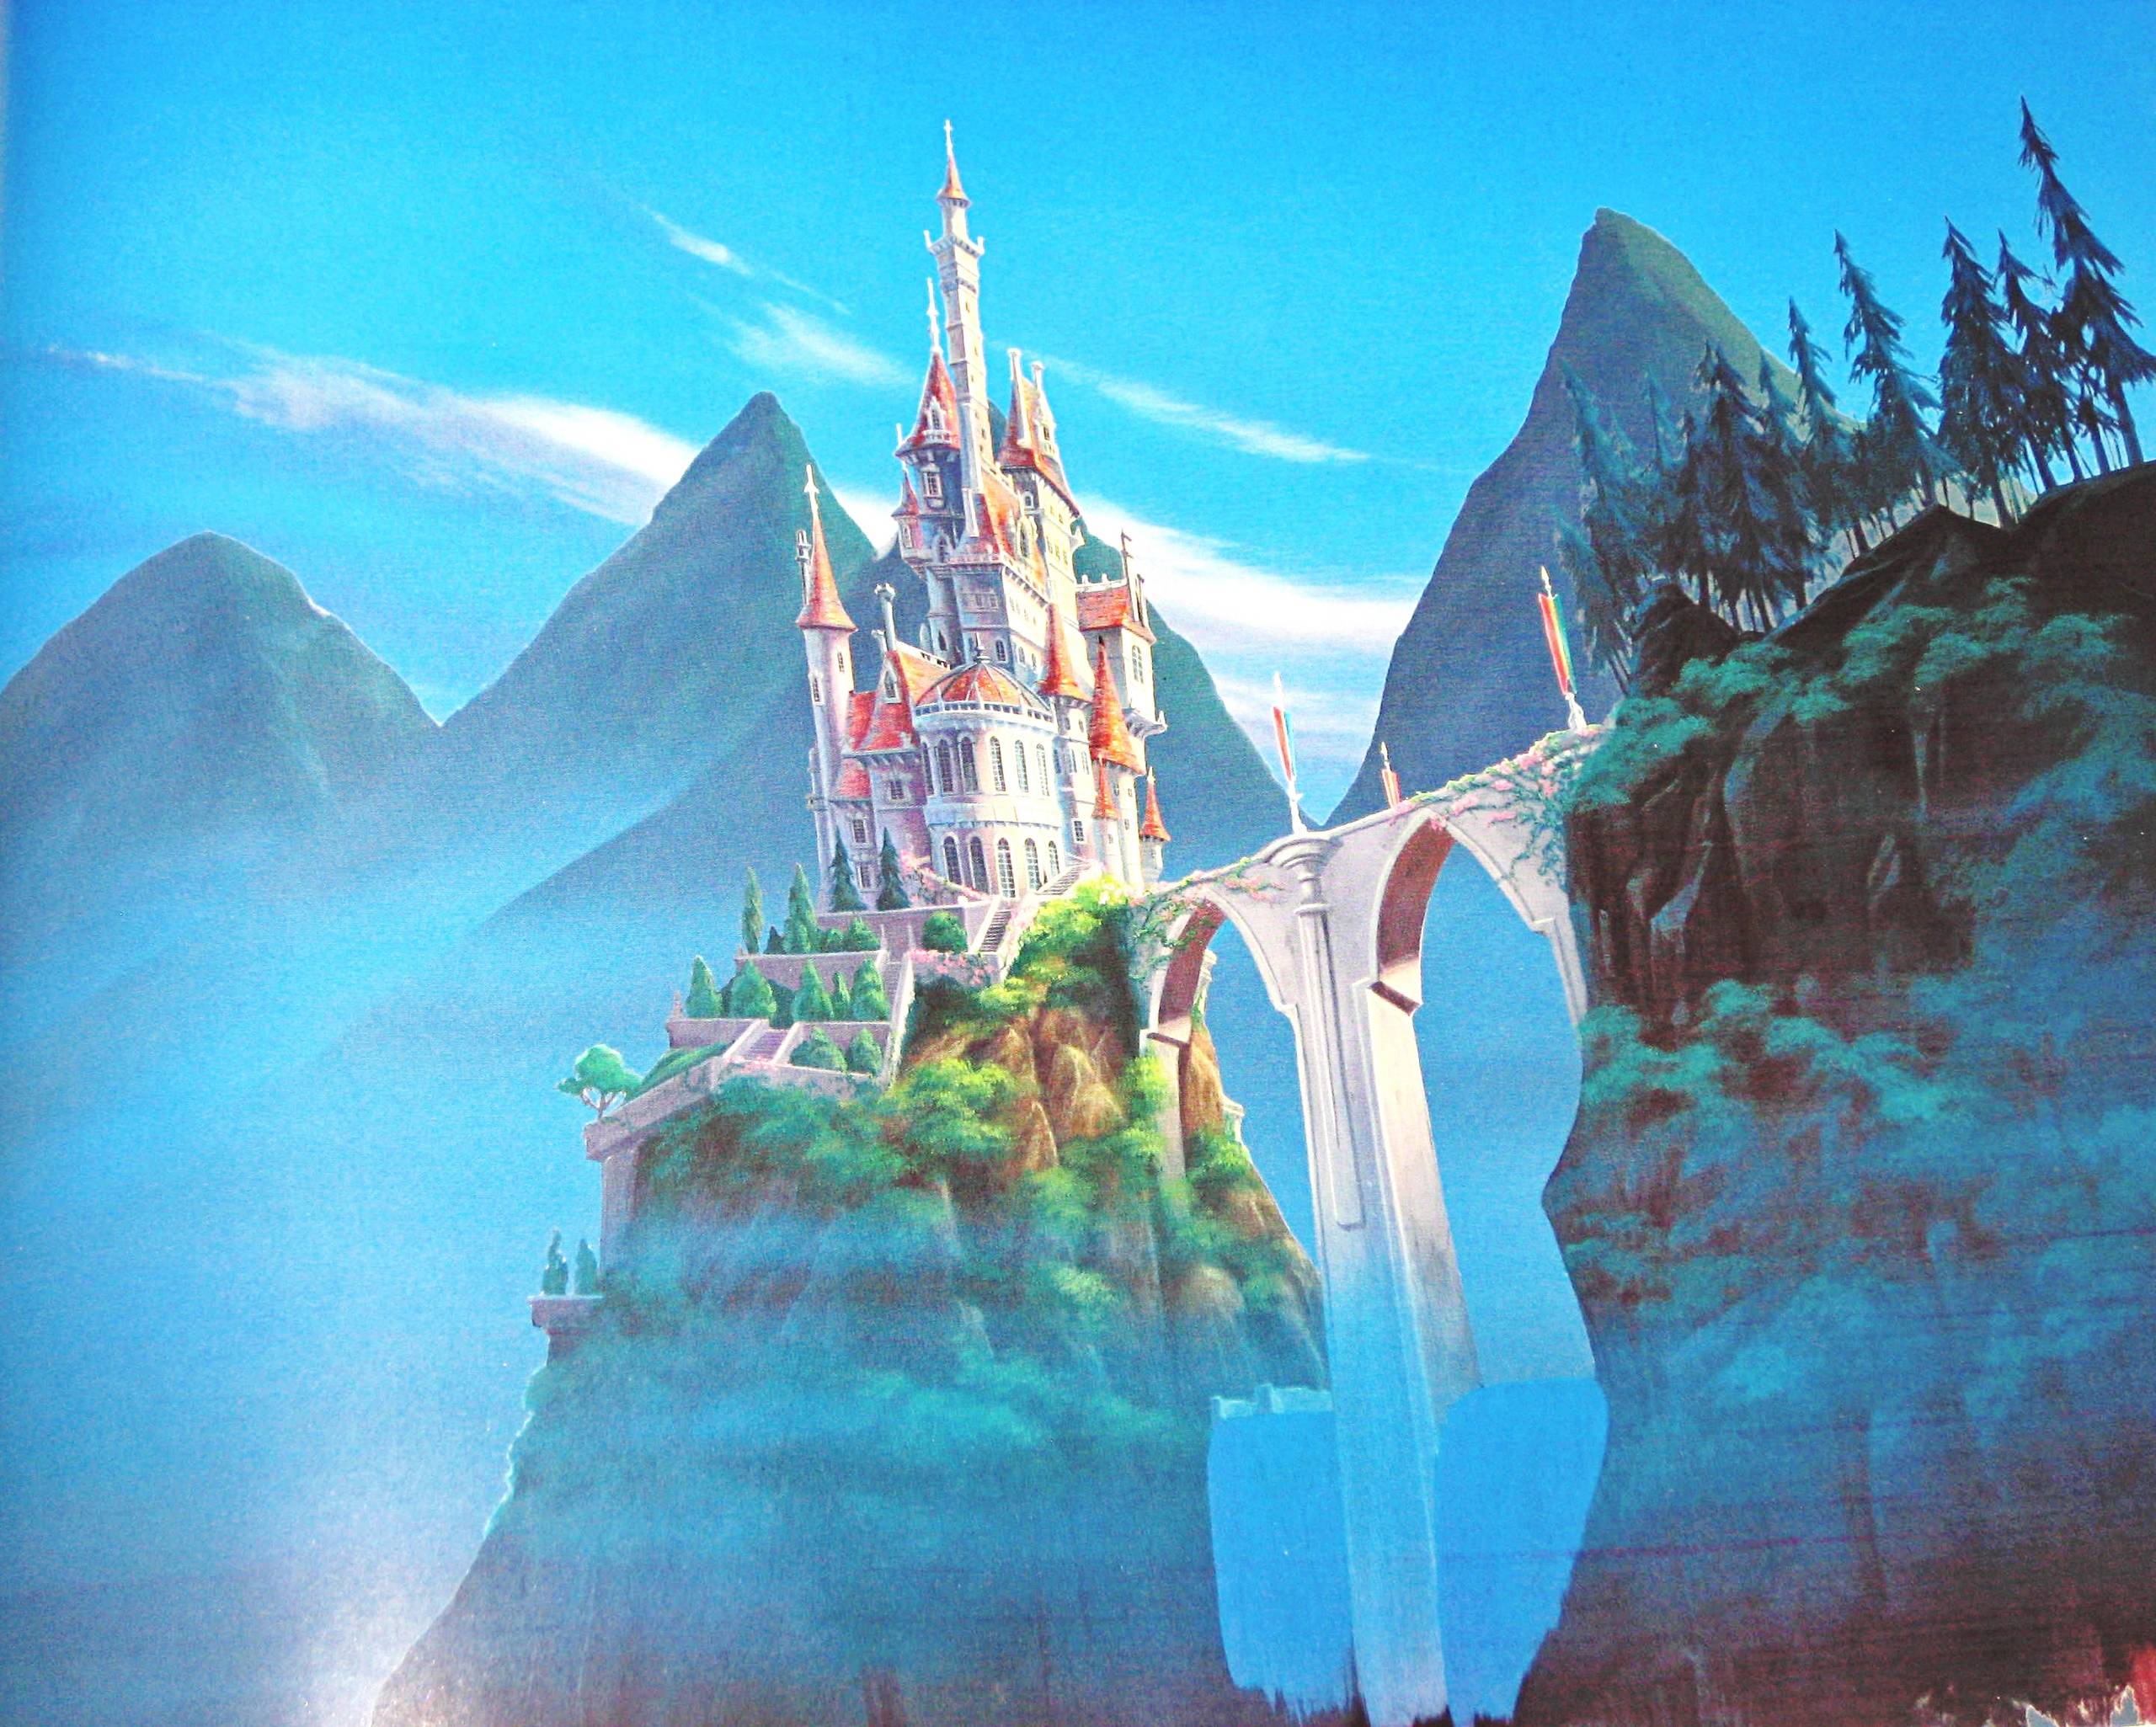 Disney Castle Backgrounds - Wallpaper Cave